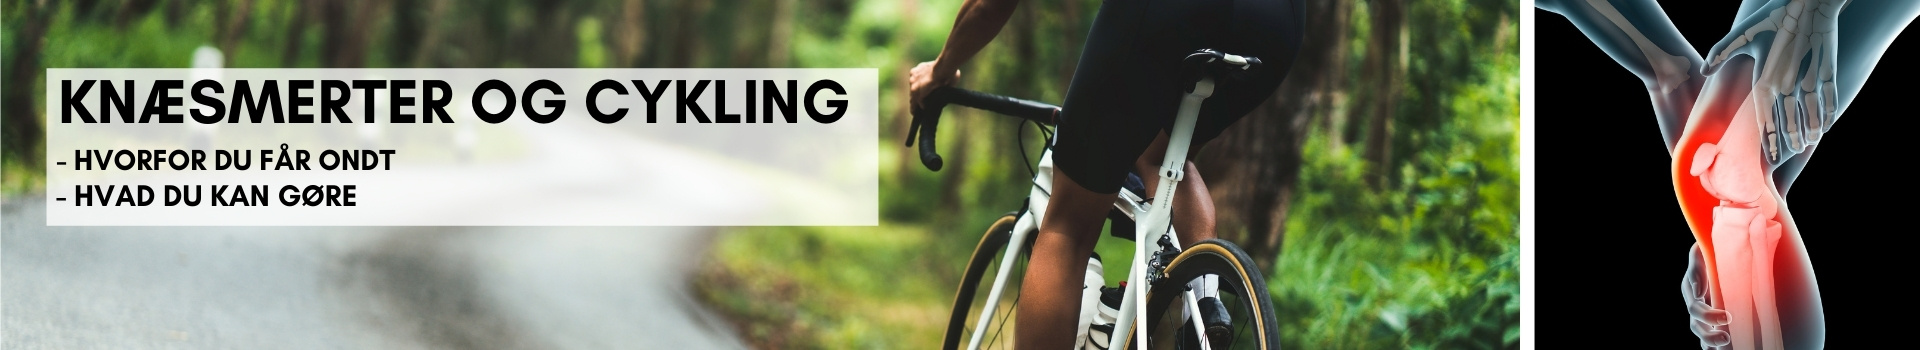 Sportstiming - Knæsmerter og cykling Hvorfor får du og hvad kan du